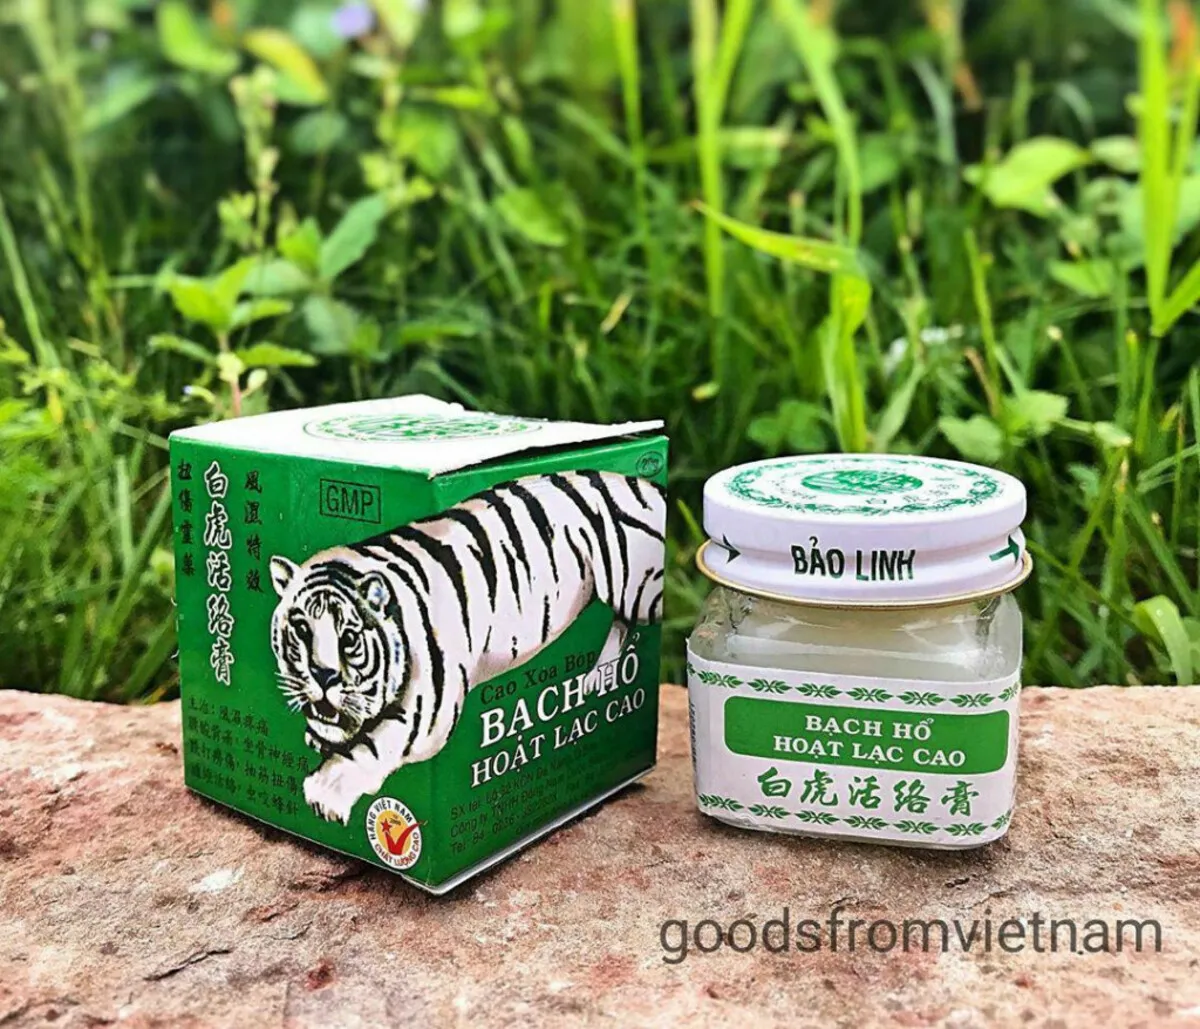 Вьетнамская мазь "Белый тигр" для лечения суставов#2